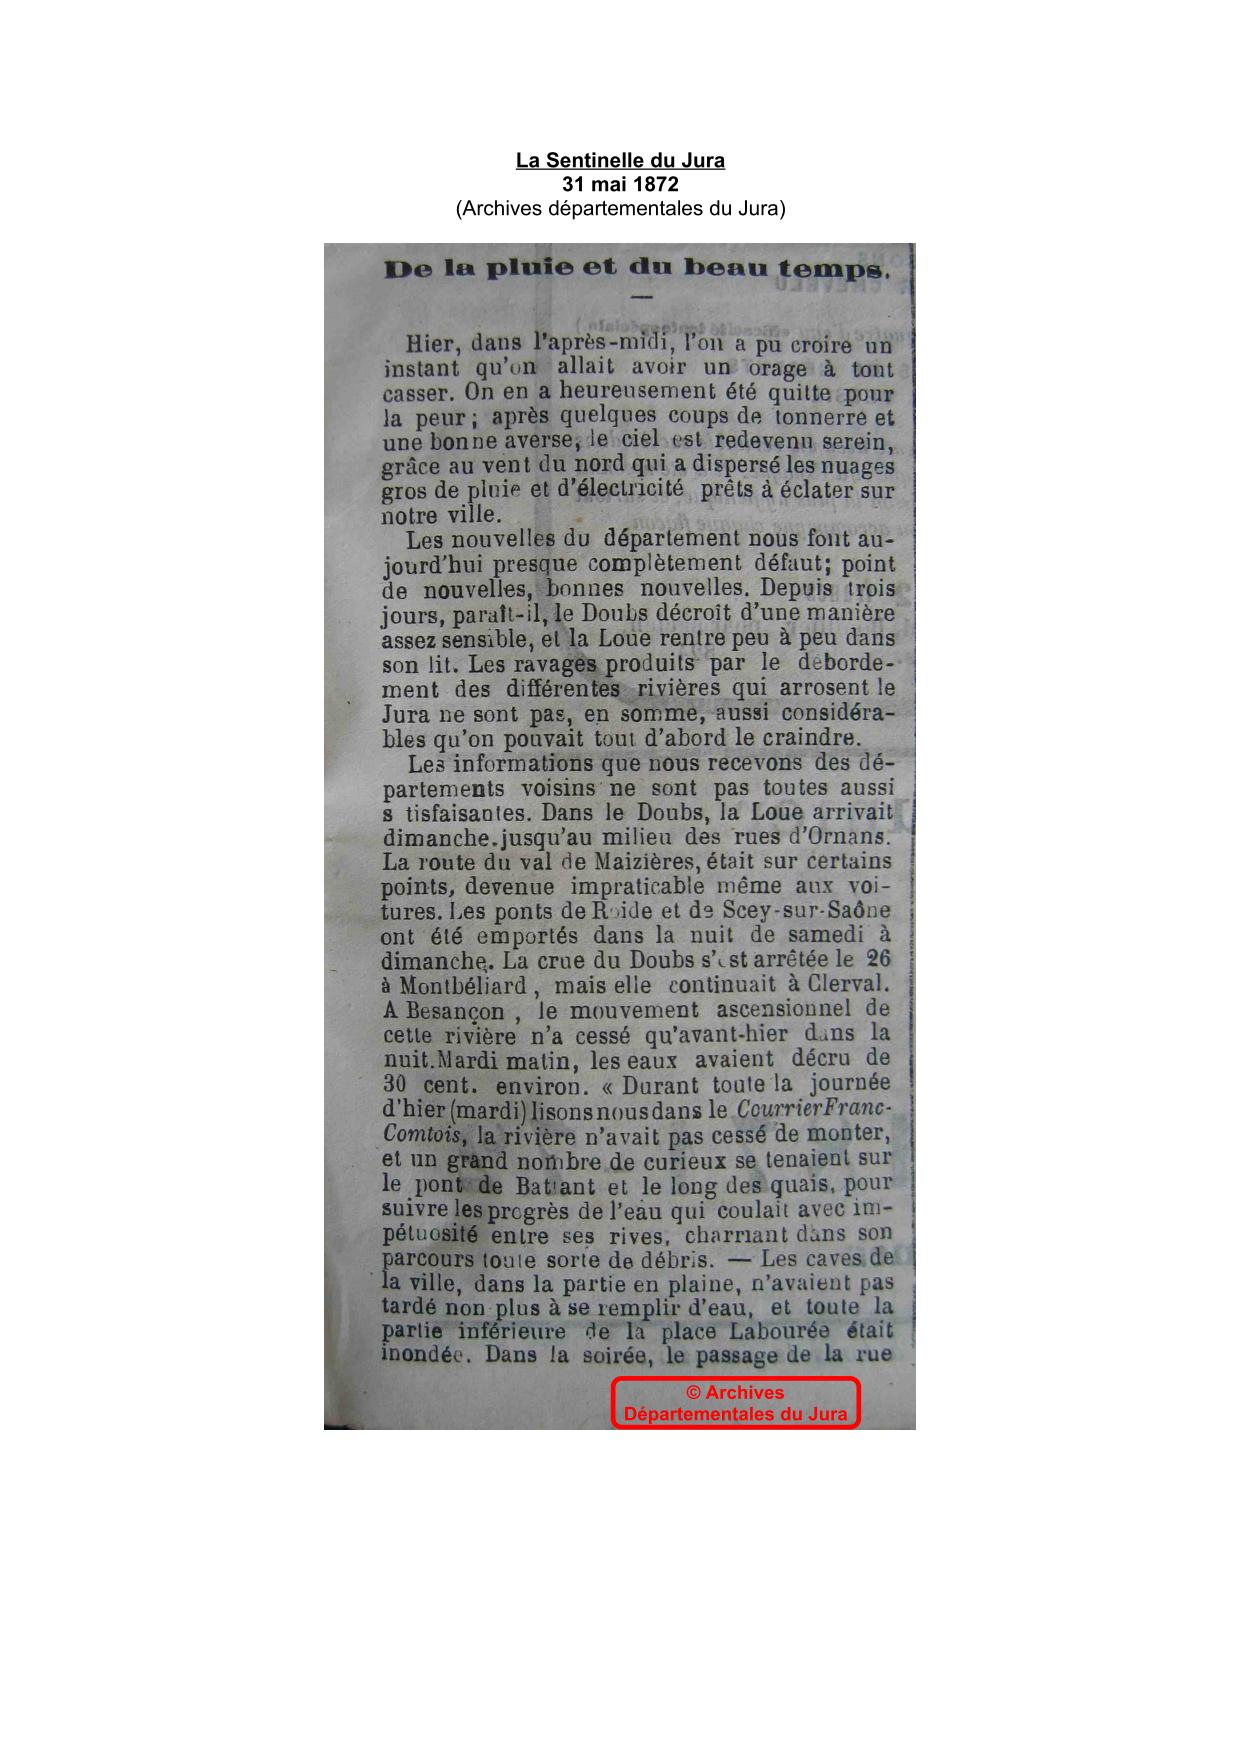 Journal - La Sentinelle du Jura - 1872 - Partie 1